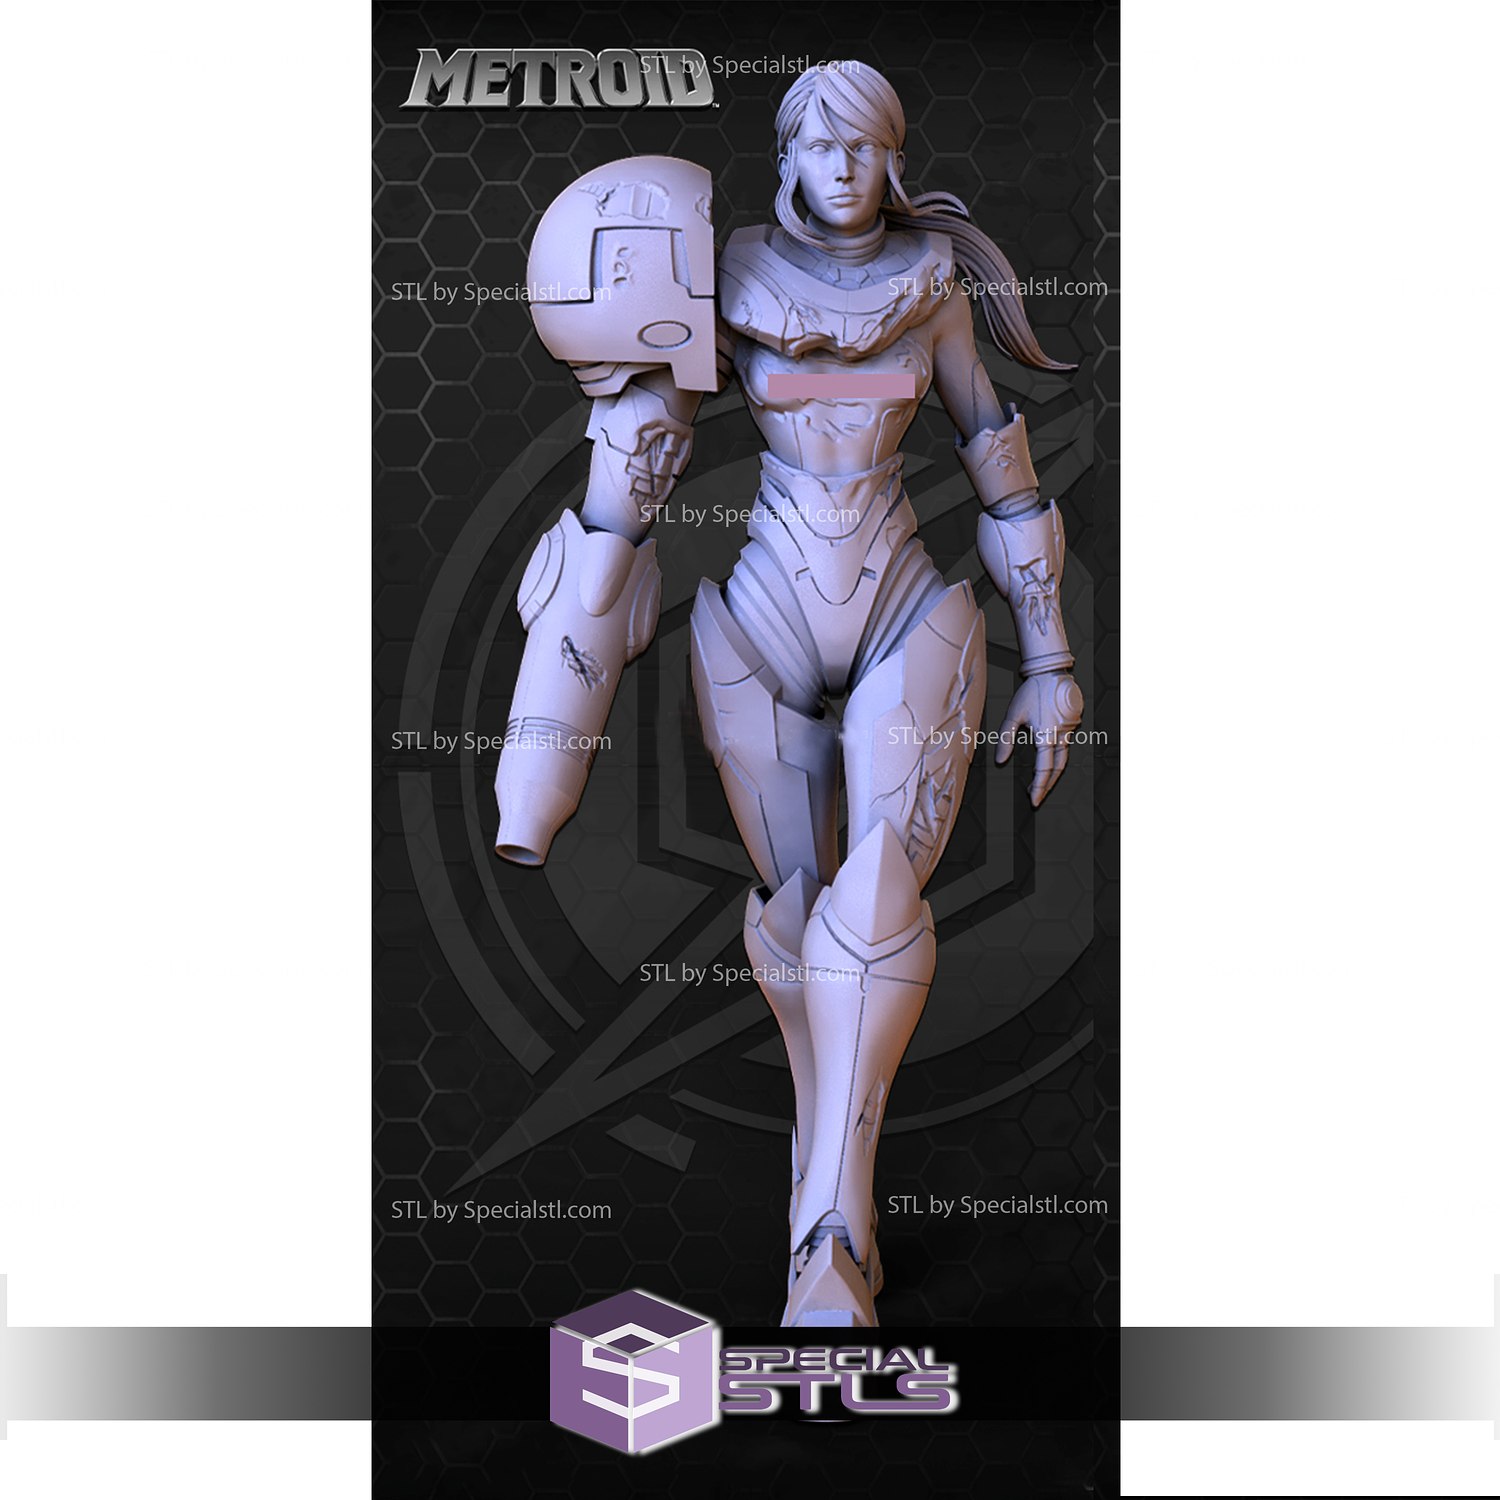 Samus Aran from Metroid Dread